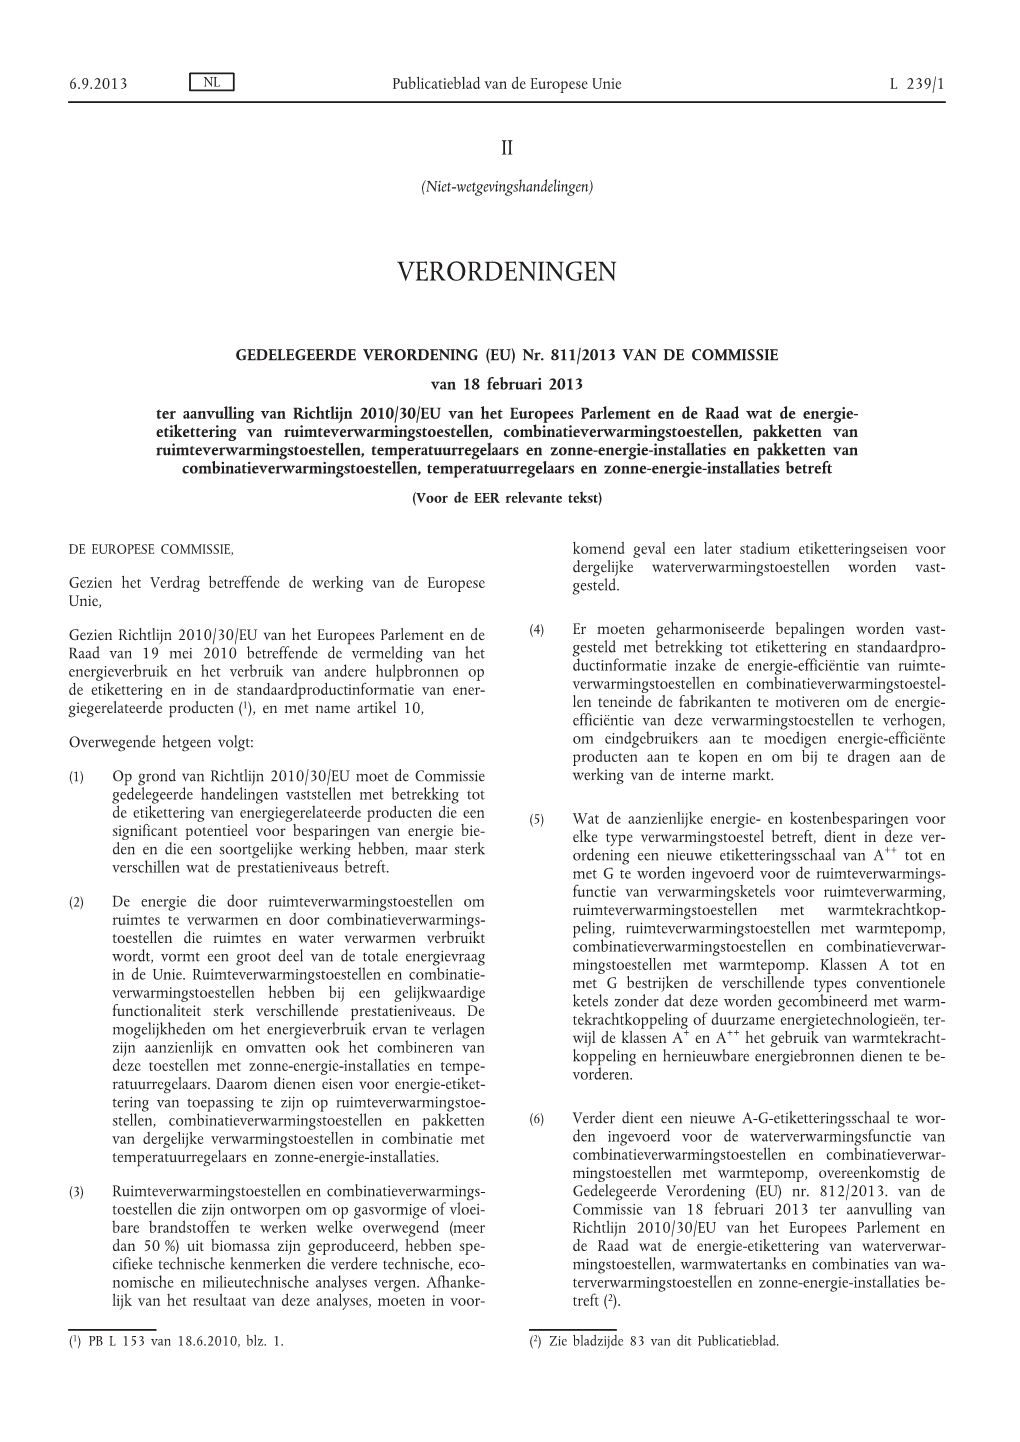 (EU) Nr. 811/2013 Van De Commissie Van 18 Februari 2013 Ter Aanvulling